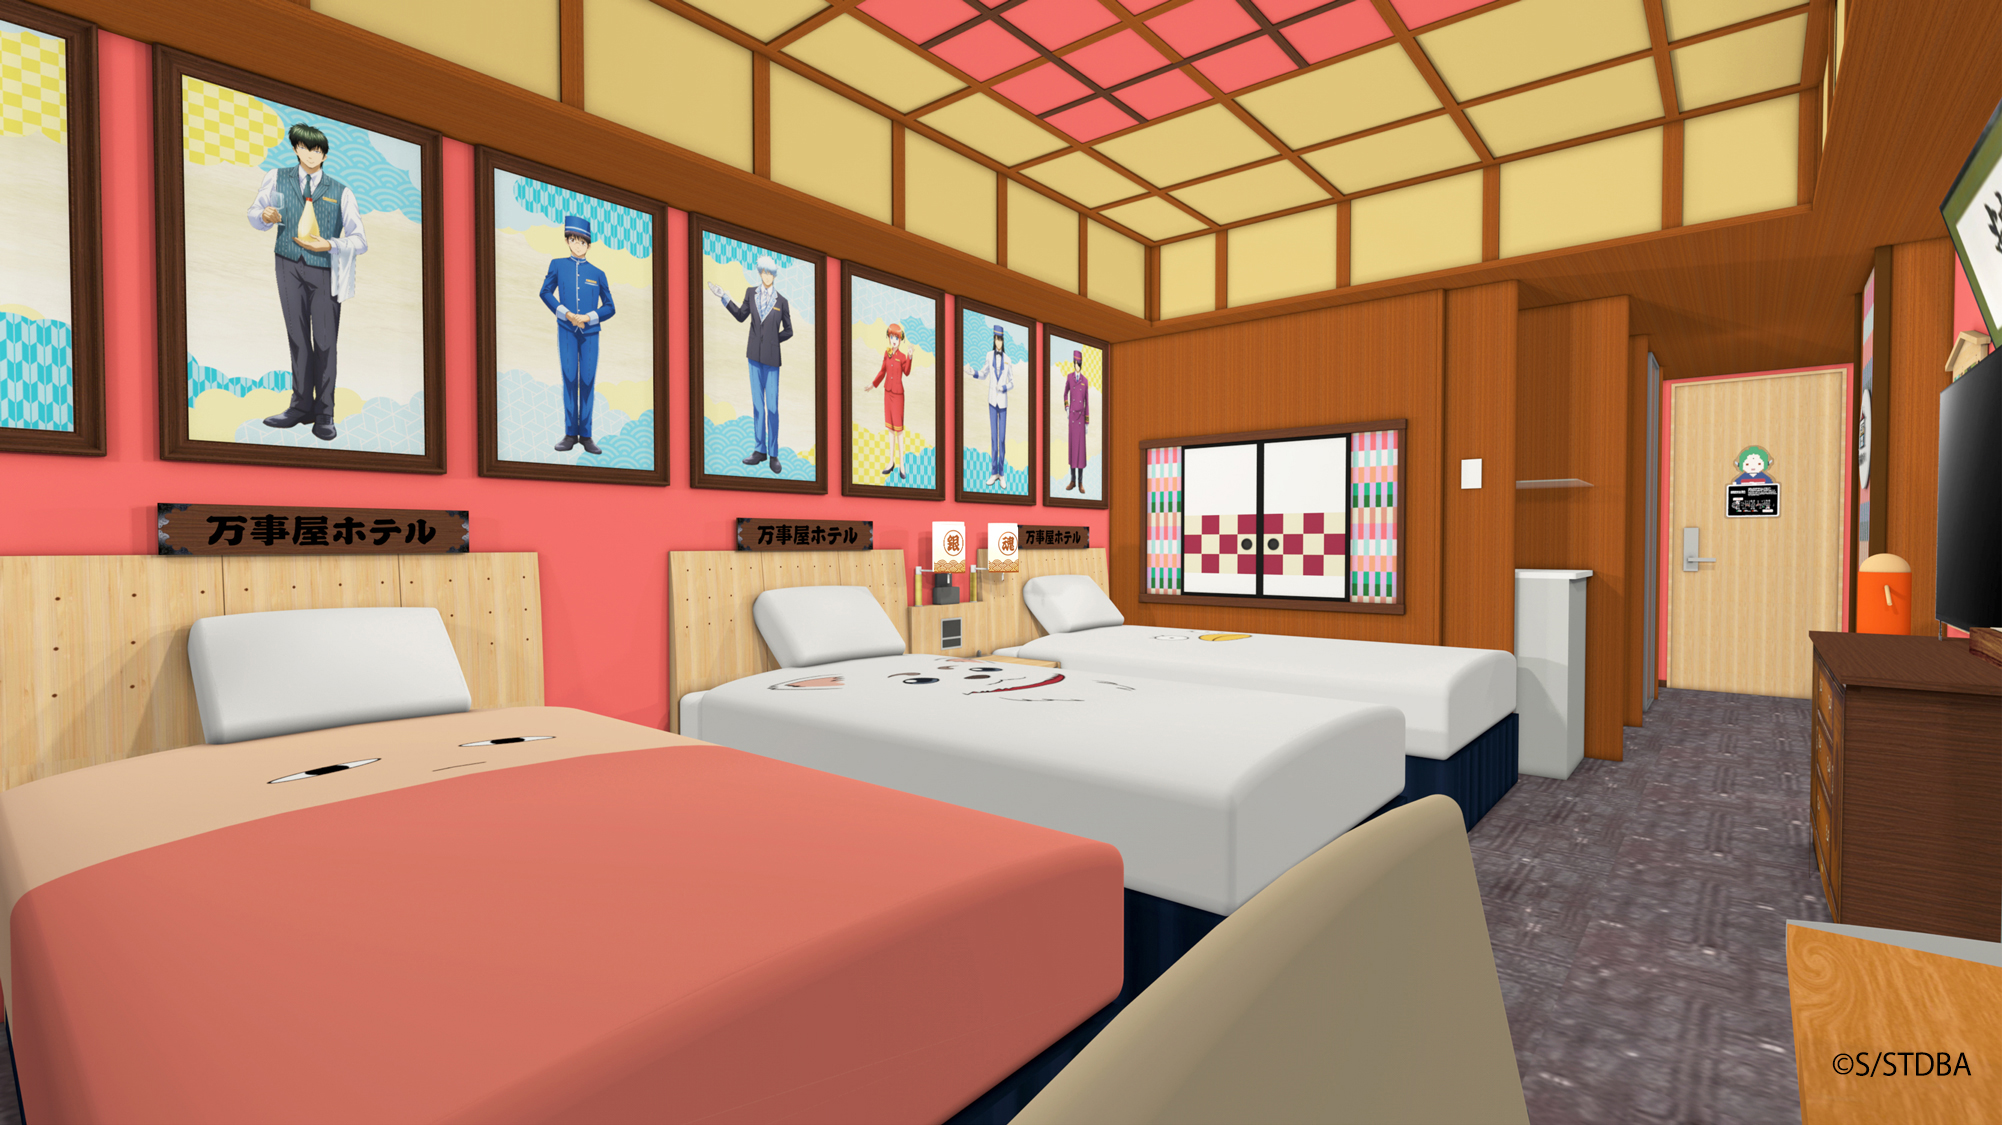 「銀魂×東京ドームホテル」特別コラボレーションルーム イメージ